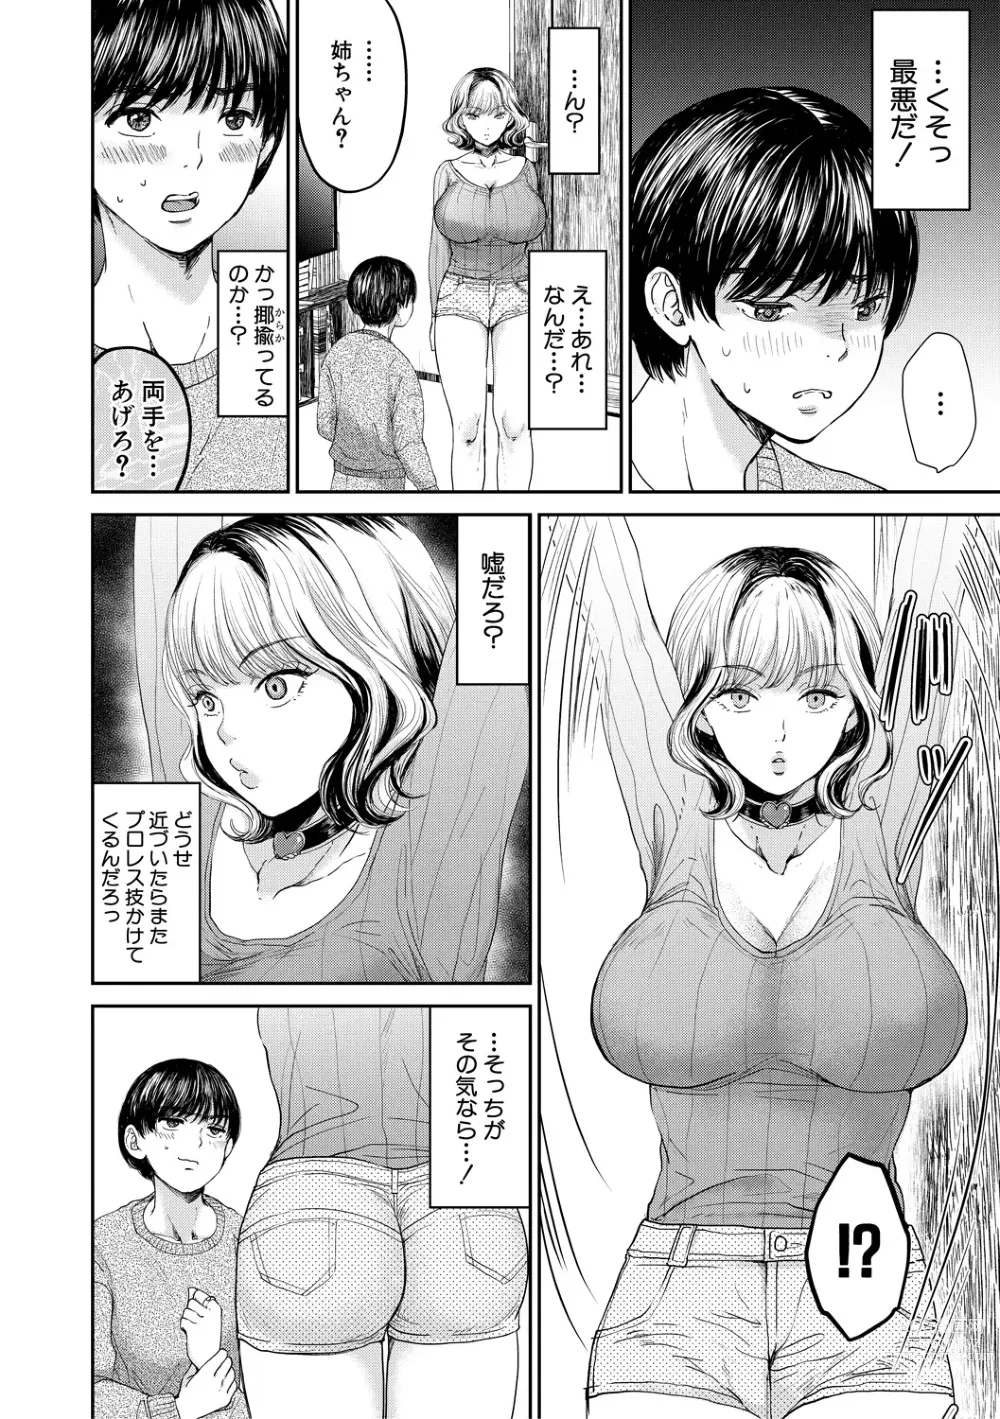 Page 8 of manga Shiborikiri Ane Body